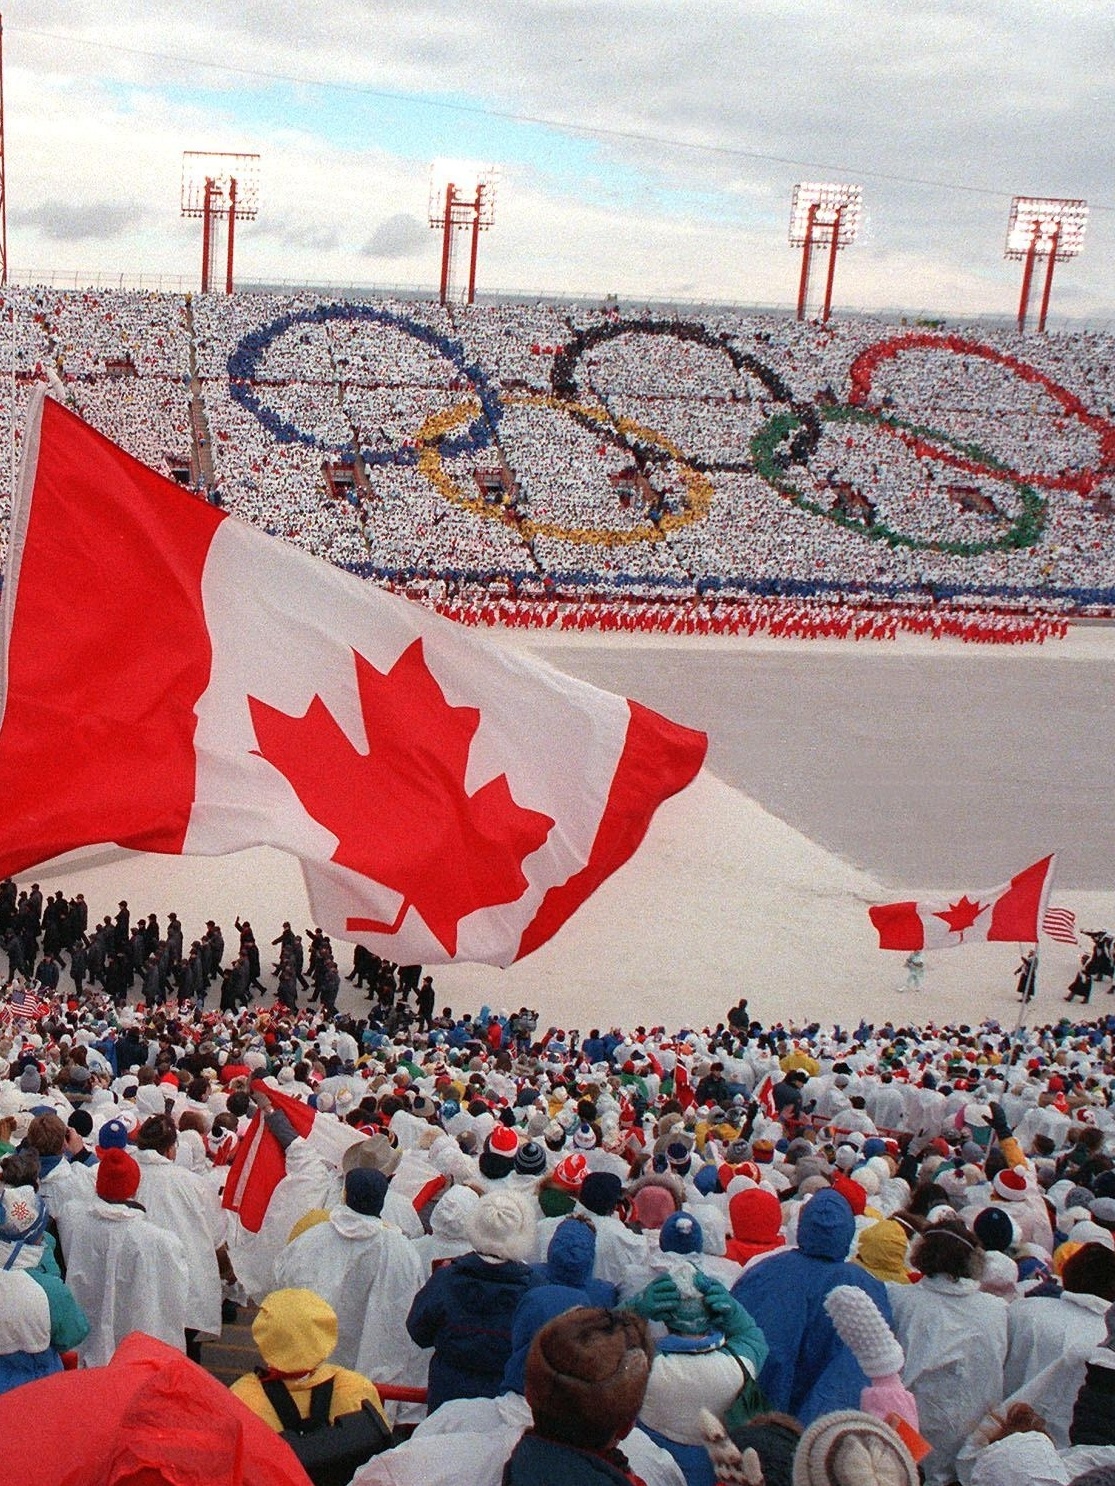 Canadá e Reino Unido também aderem ao boicote aos Jogos de Inverno